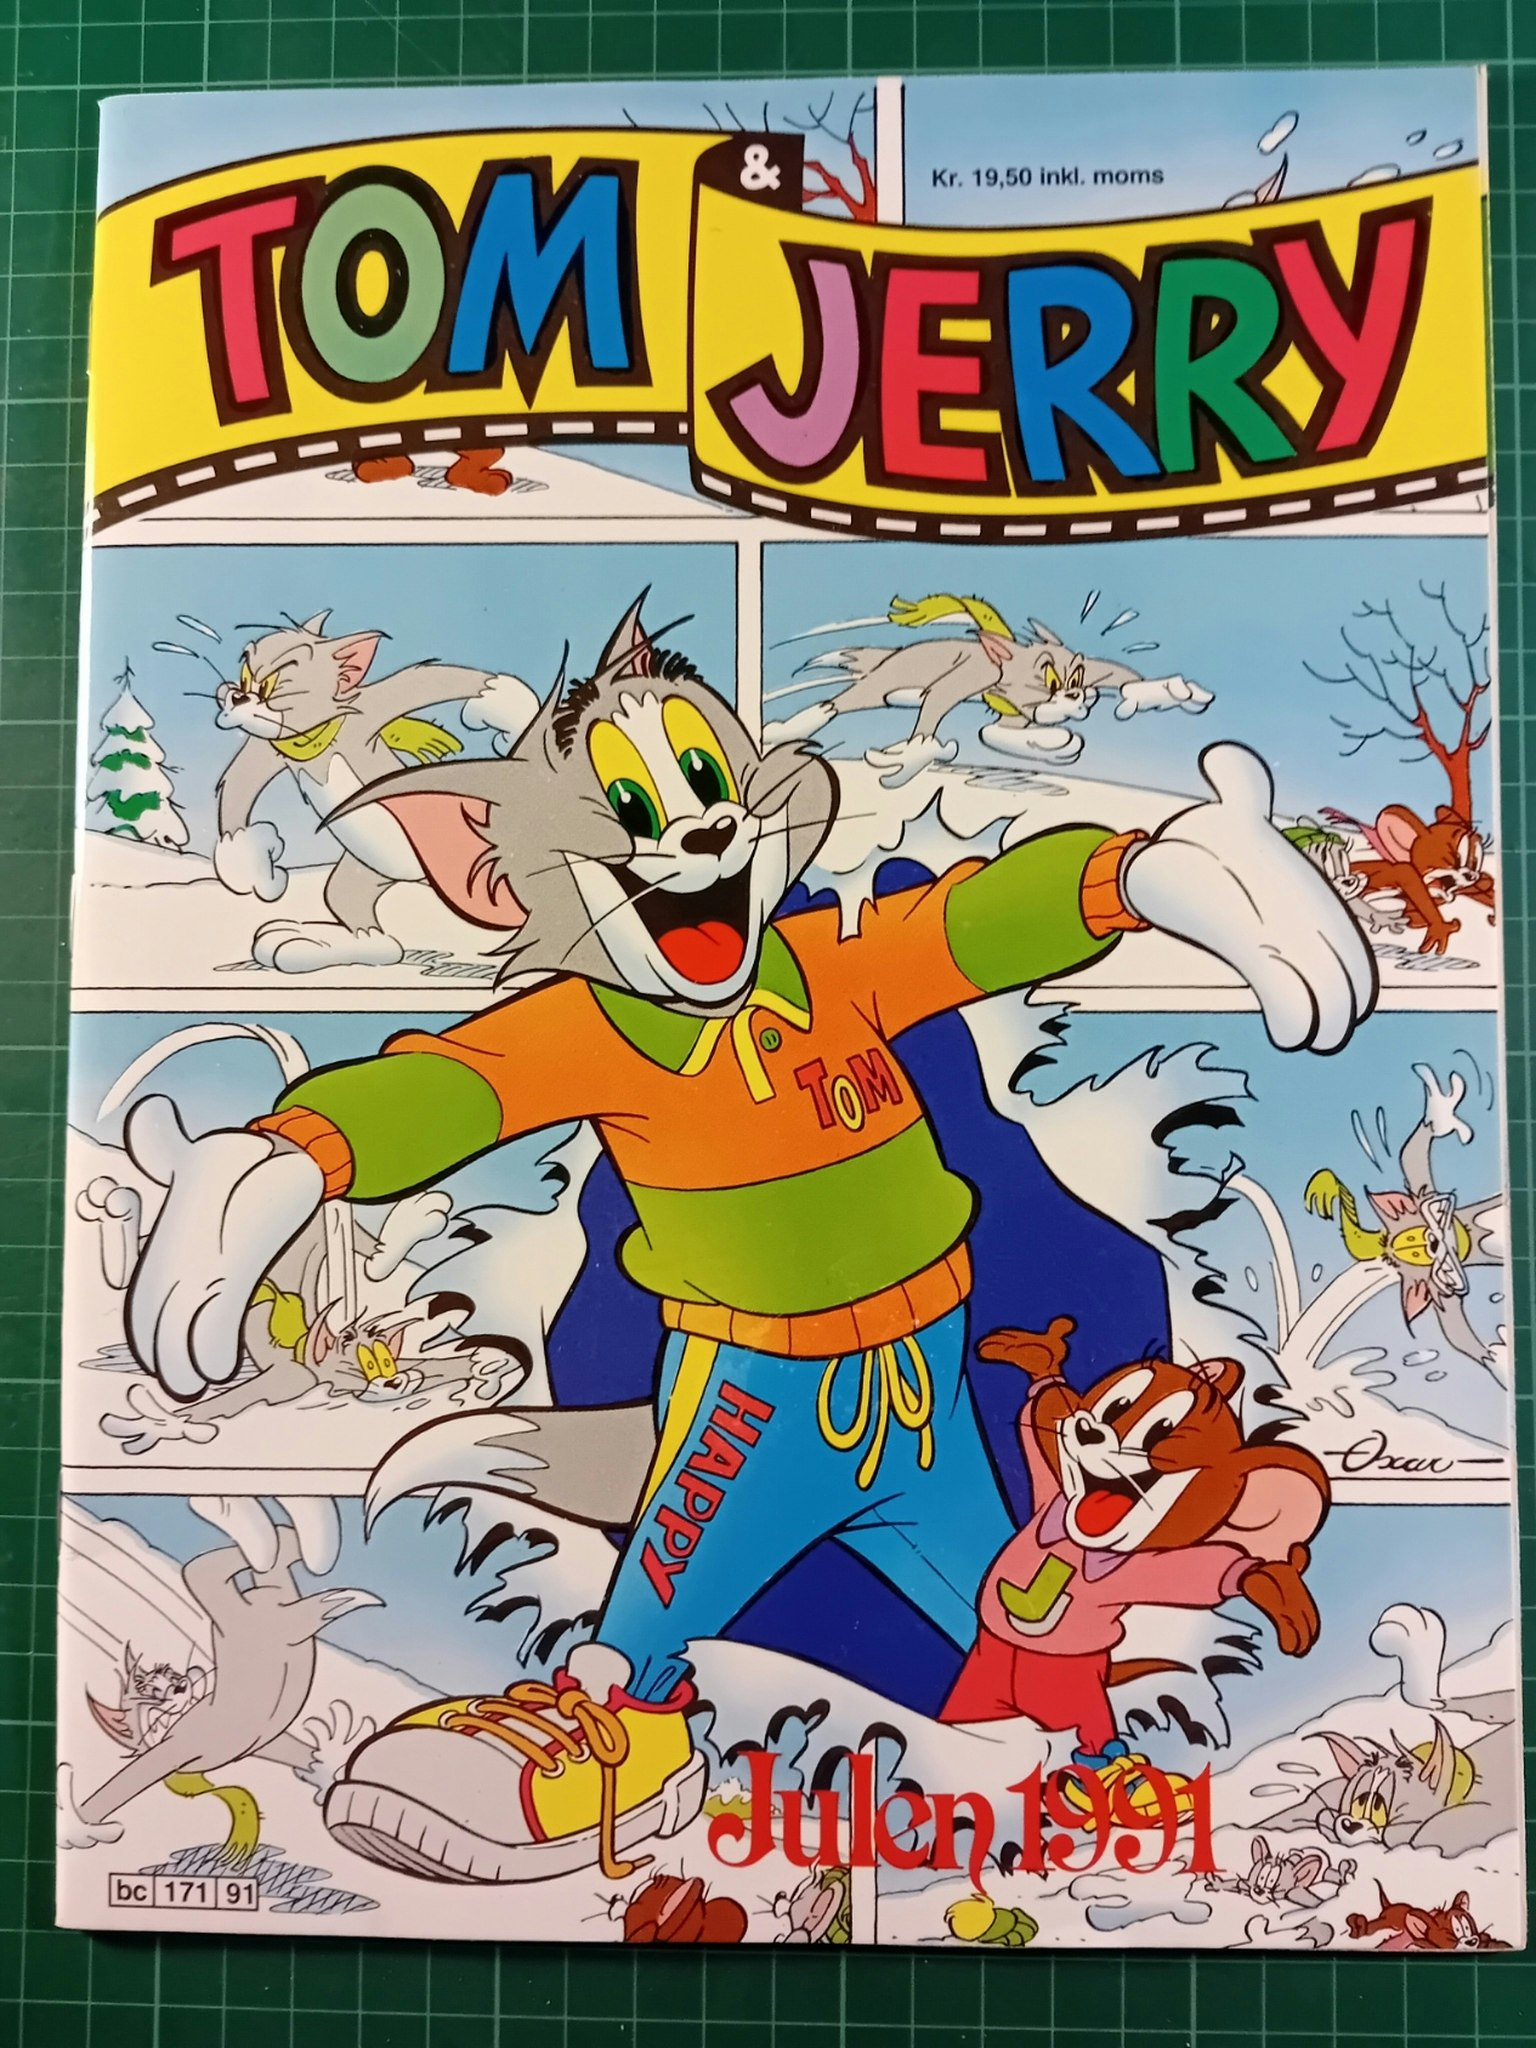 Tom & Jerry julen 1991